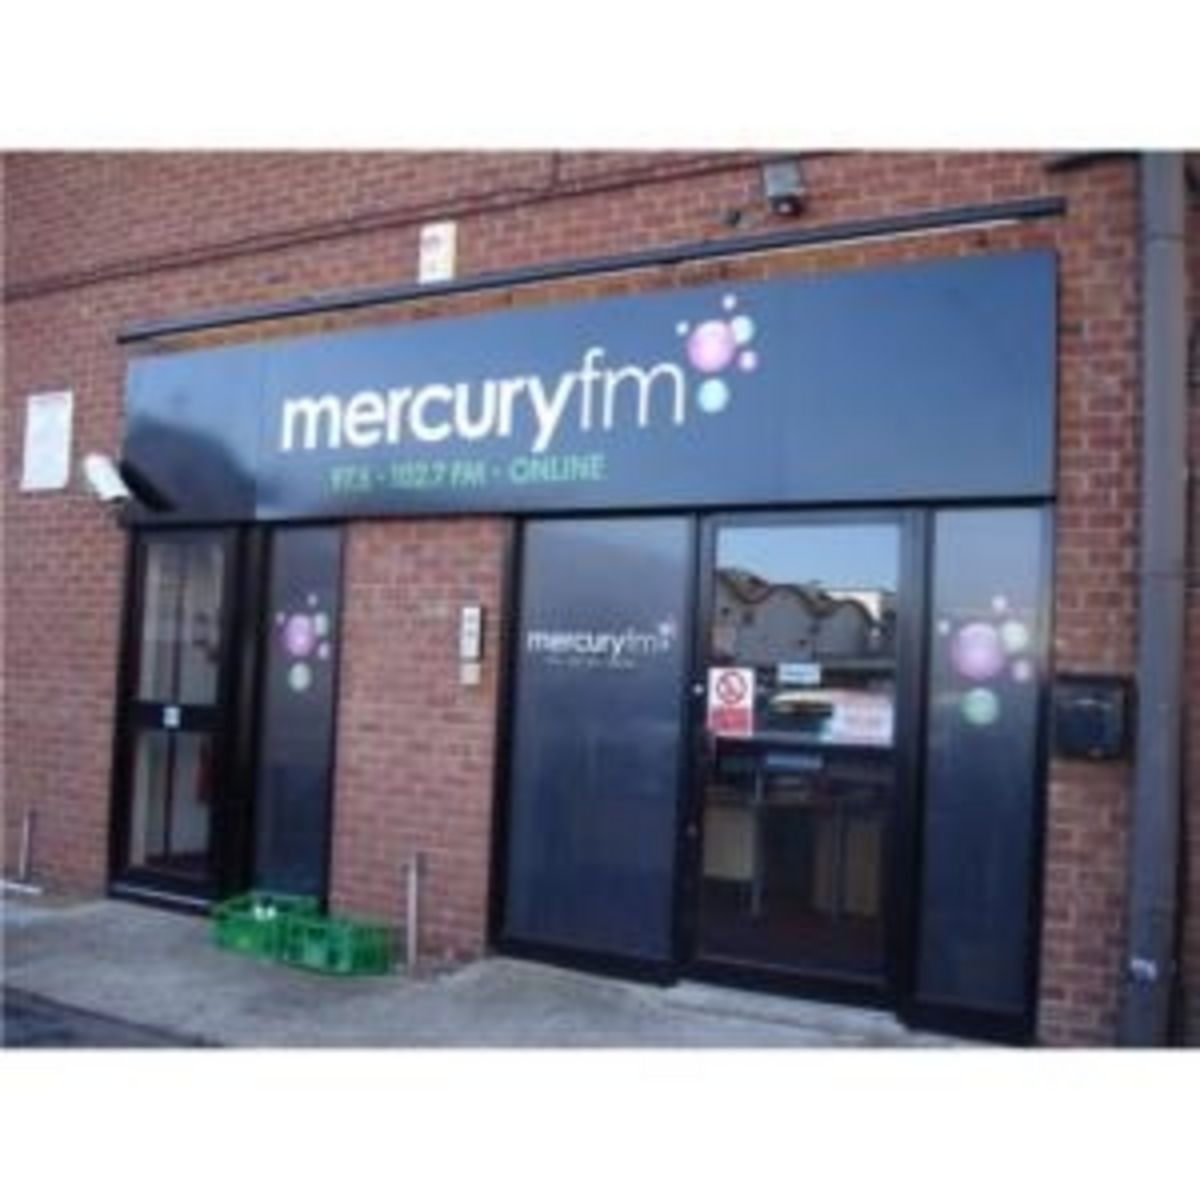 Printed Aluminium Sign for Mercury FM Radio